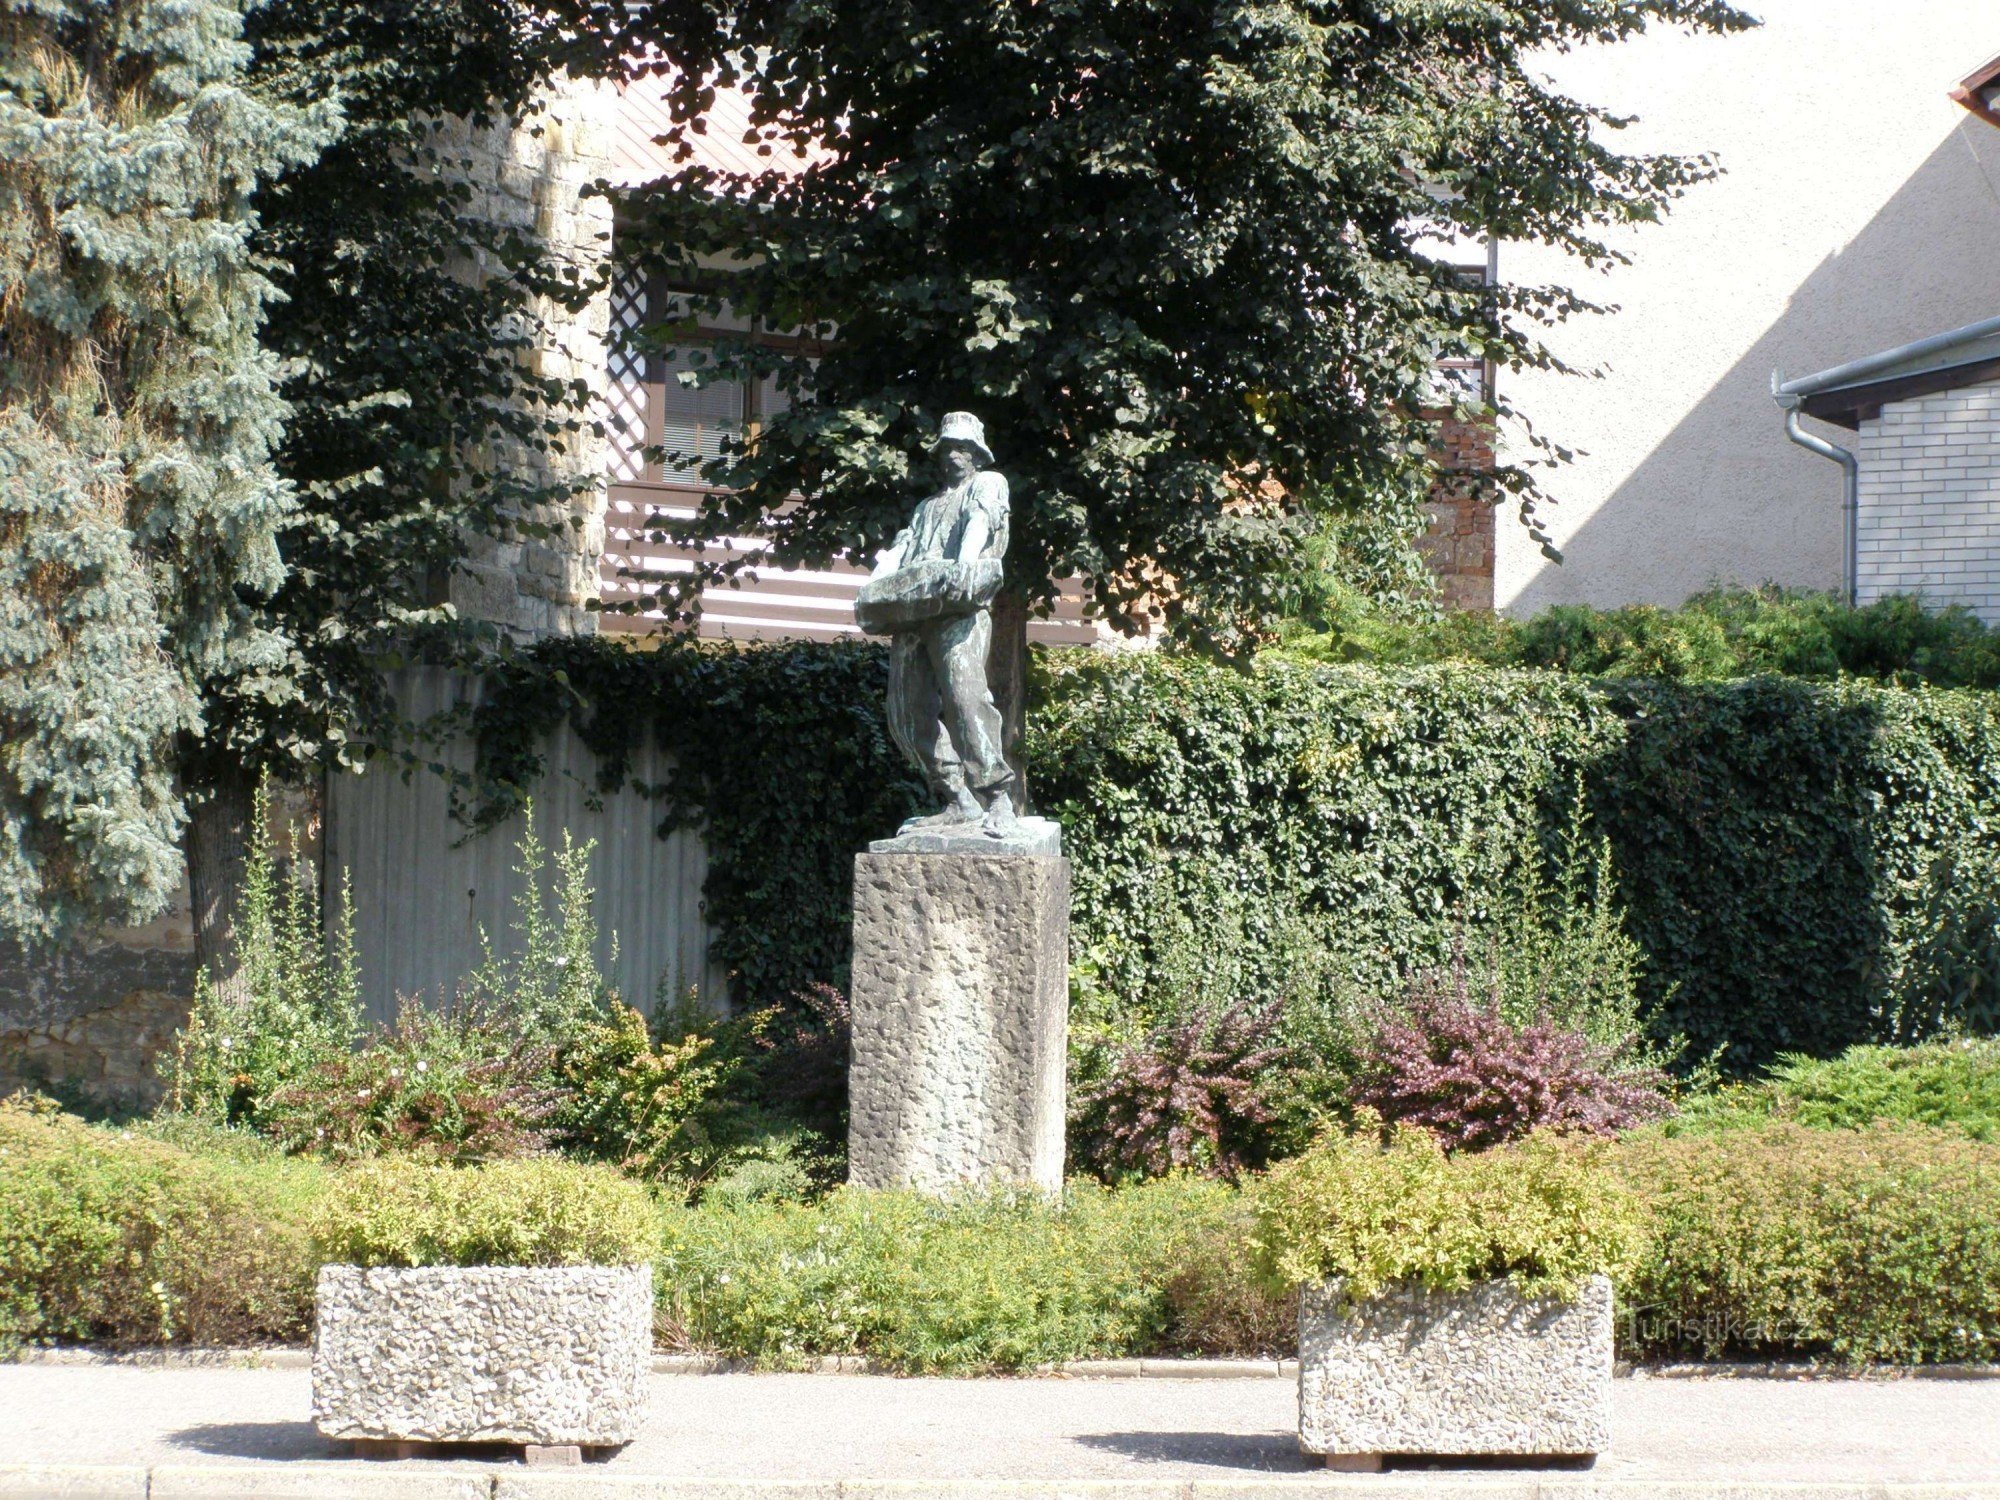 Hořice - standbeeld van de Man van Werk